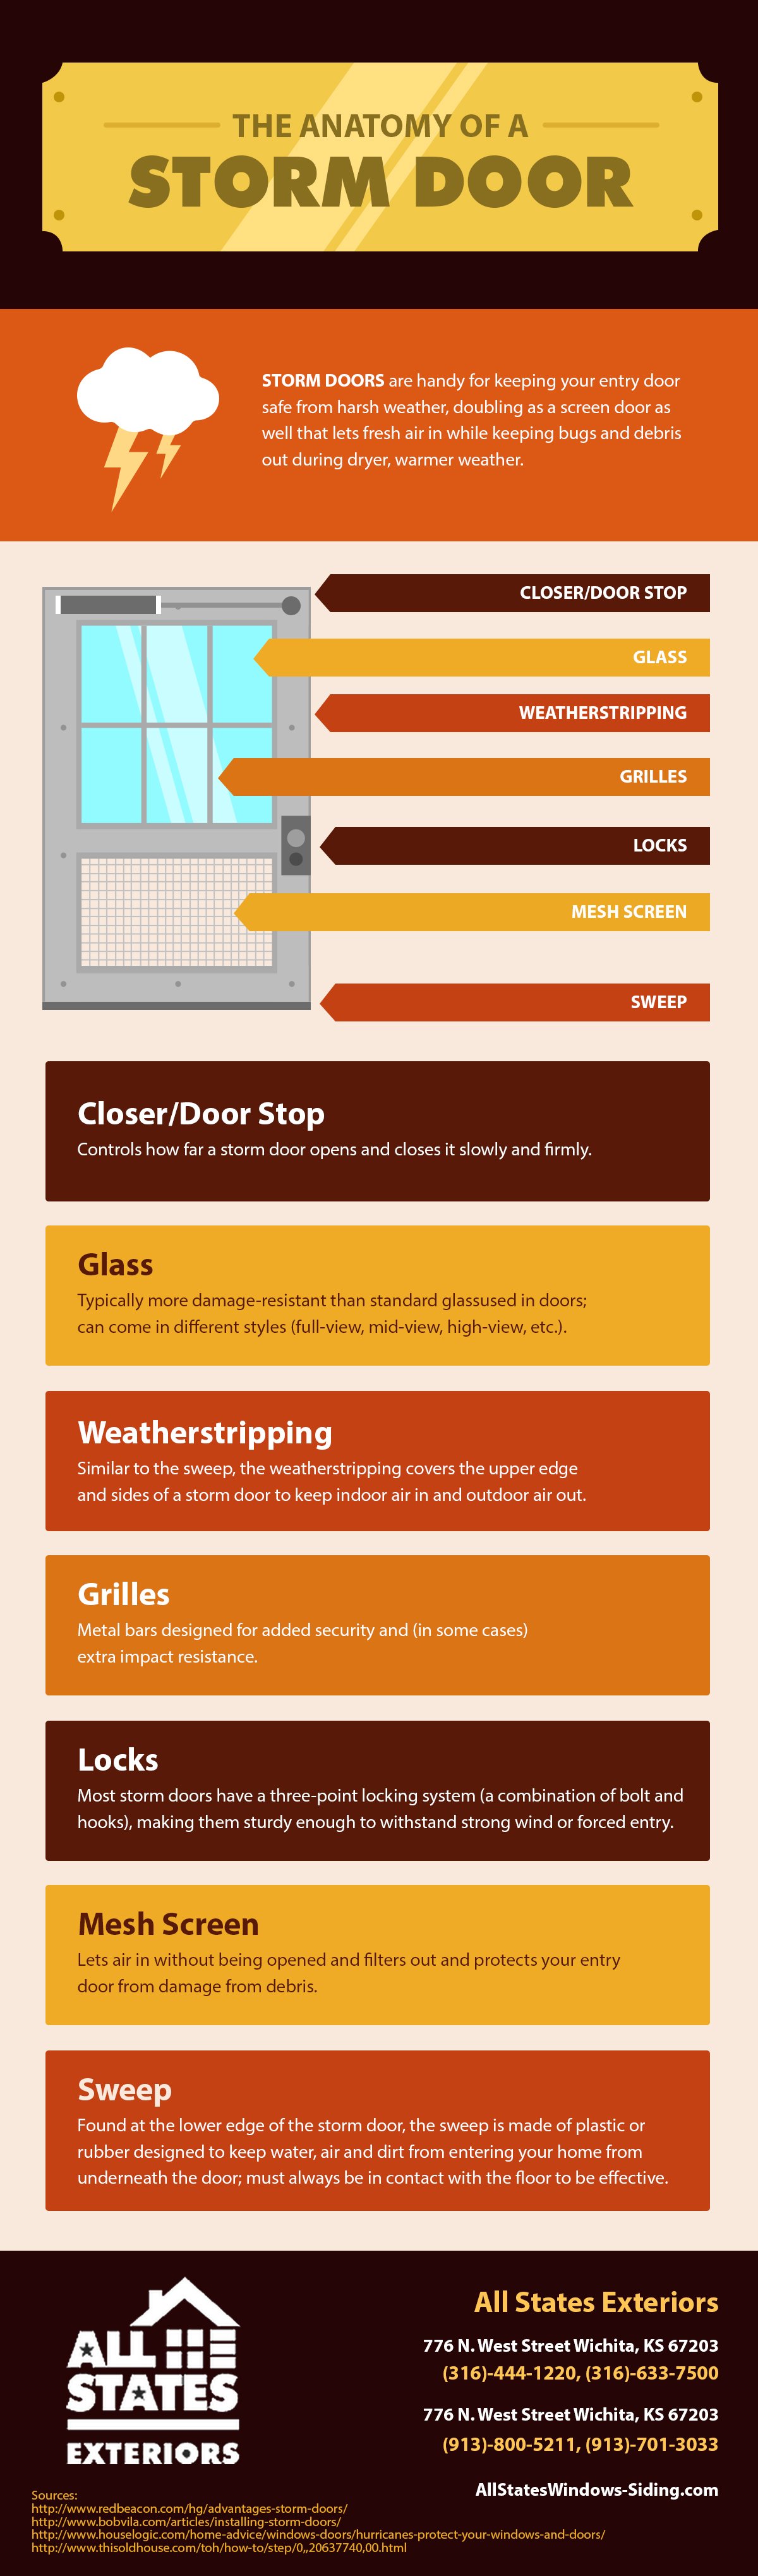 The Anatomy of a Storm Door